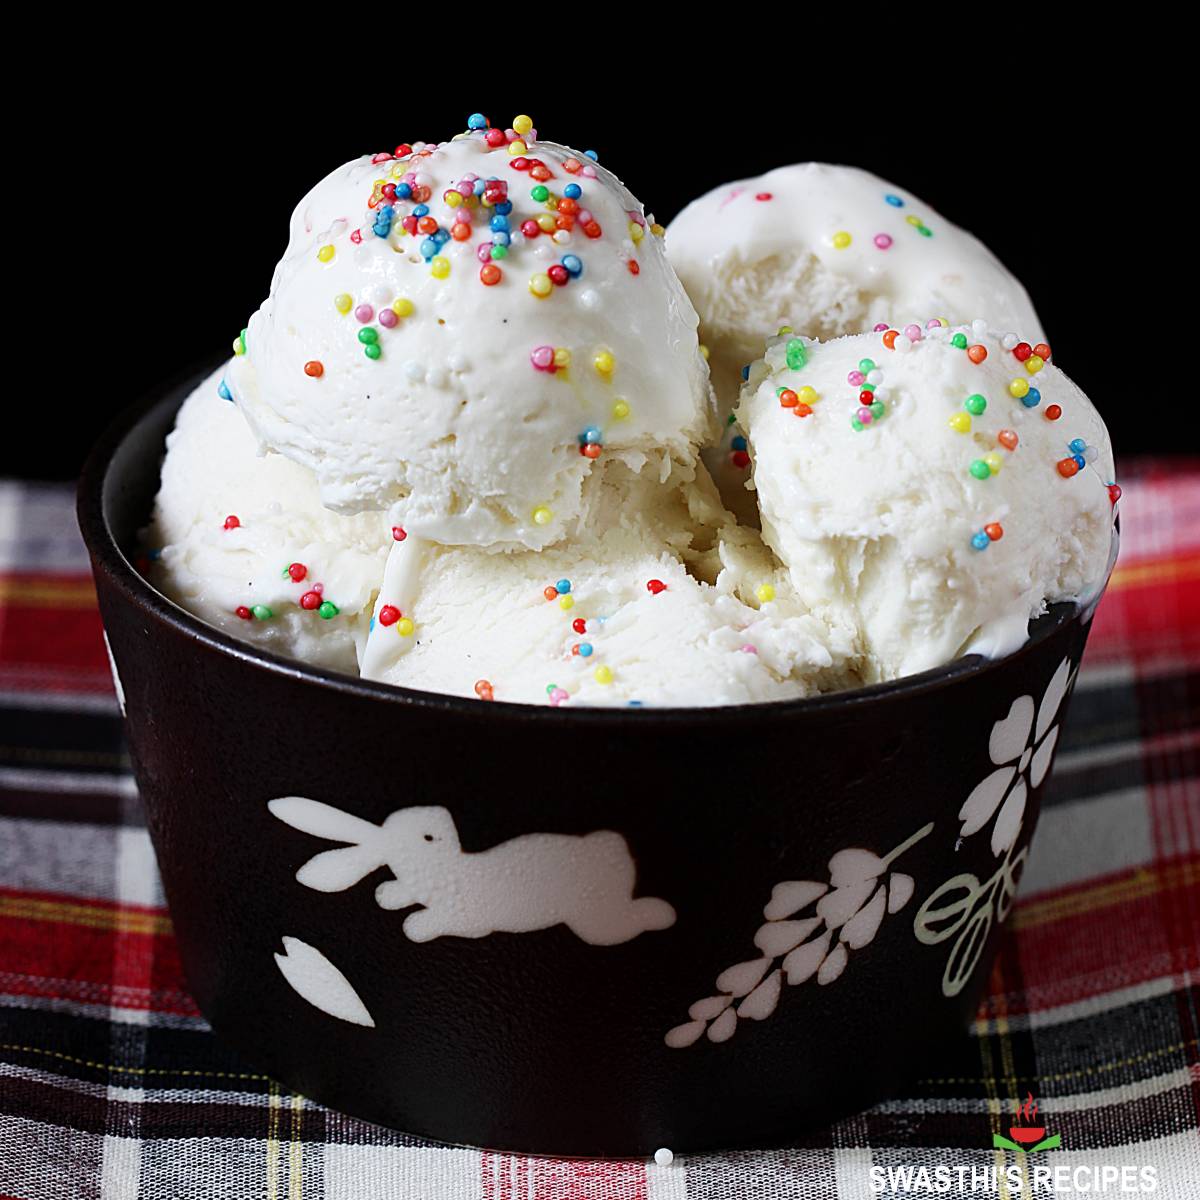 https://www.indianhealthyrecipes.com/wp-content/uploads/2022/04/homemade-ice-cream-recipe.jpg